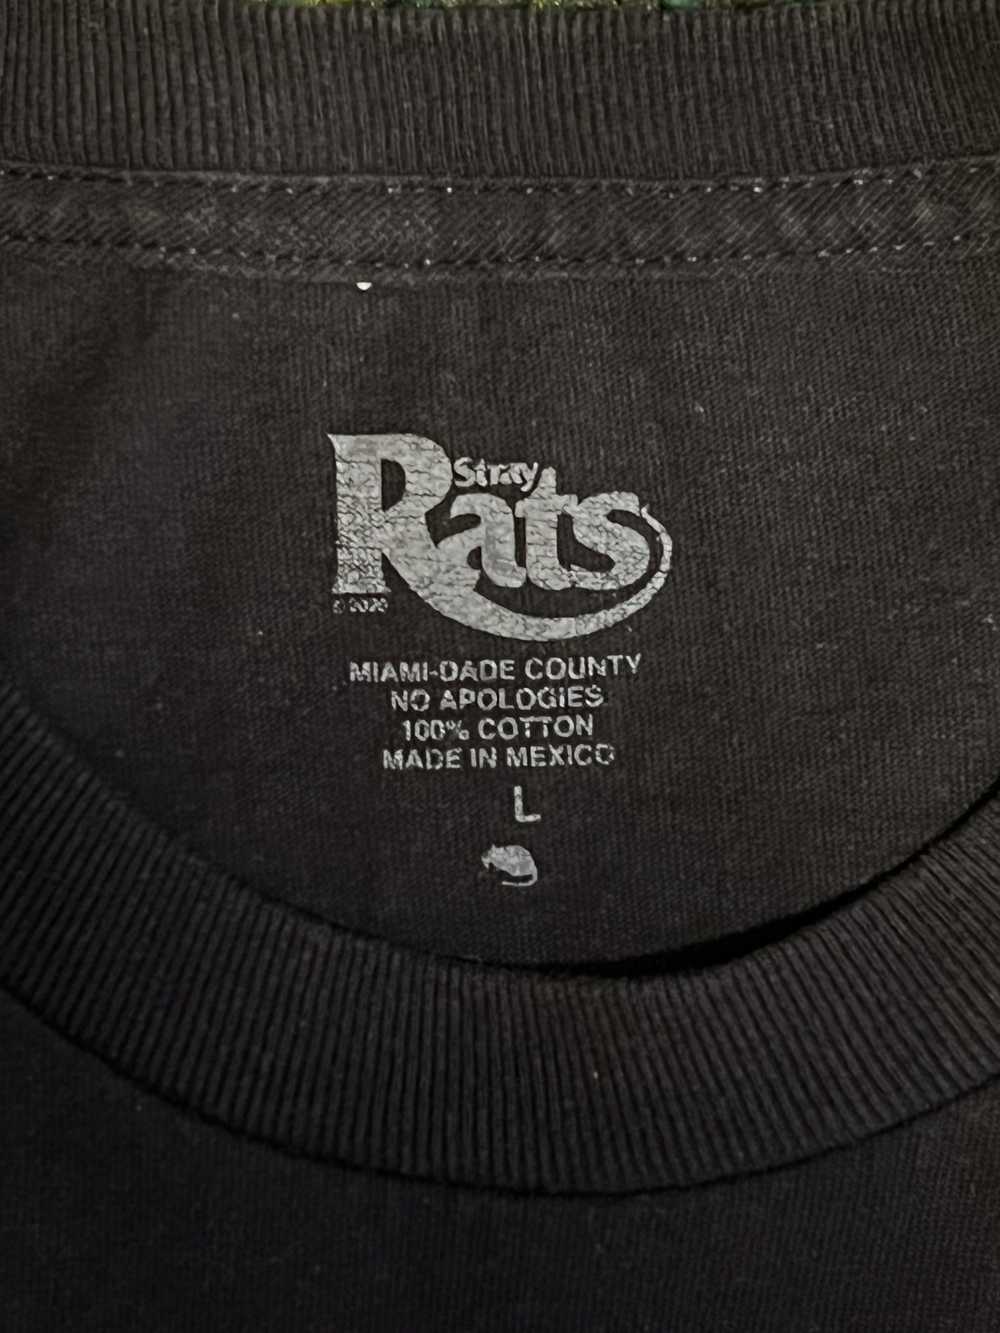 Stray Rats Stray Rats Miami 305 Tee - image 3